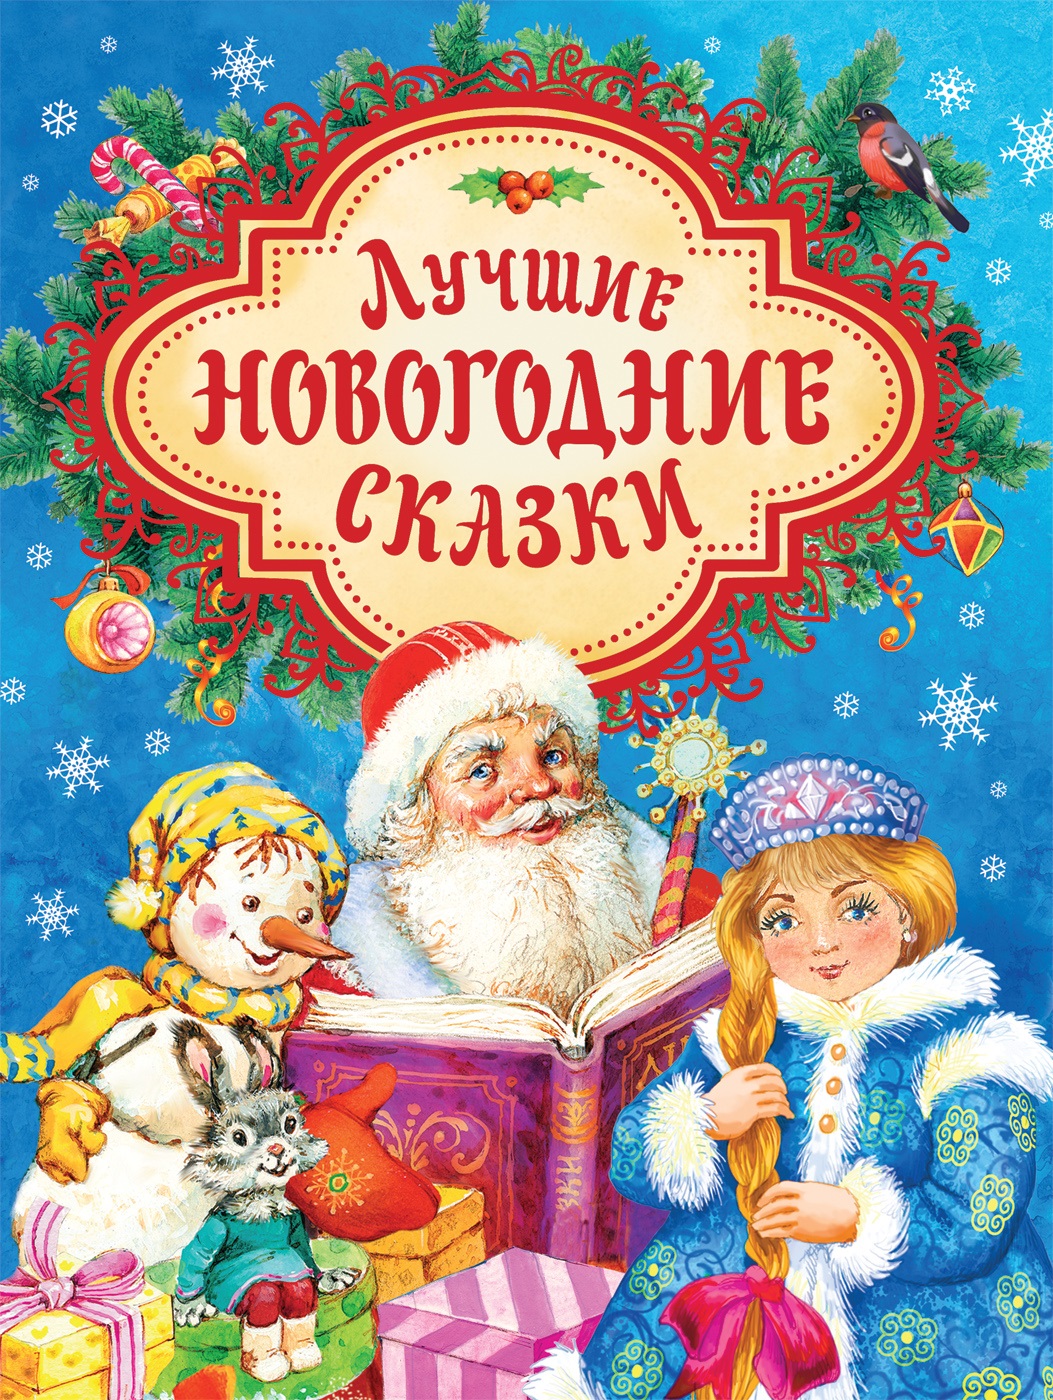 Лучшие новогодние сказки снежная королева двенадцать месяцев снегурочка морозко щелкунчик